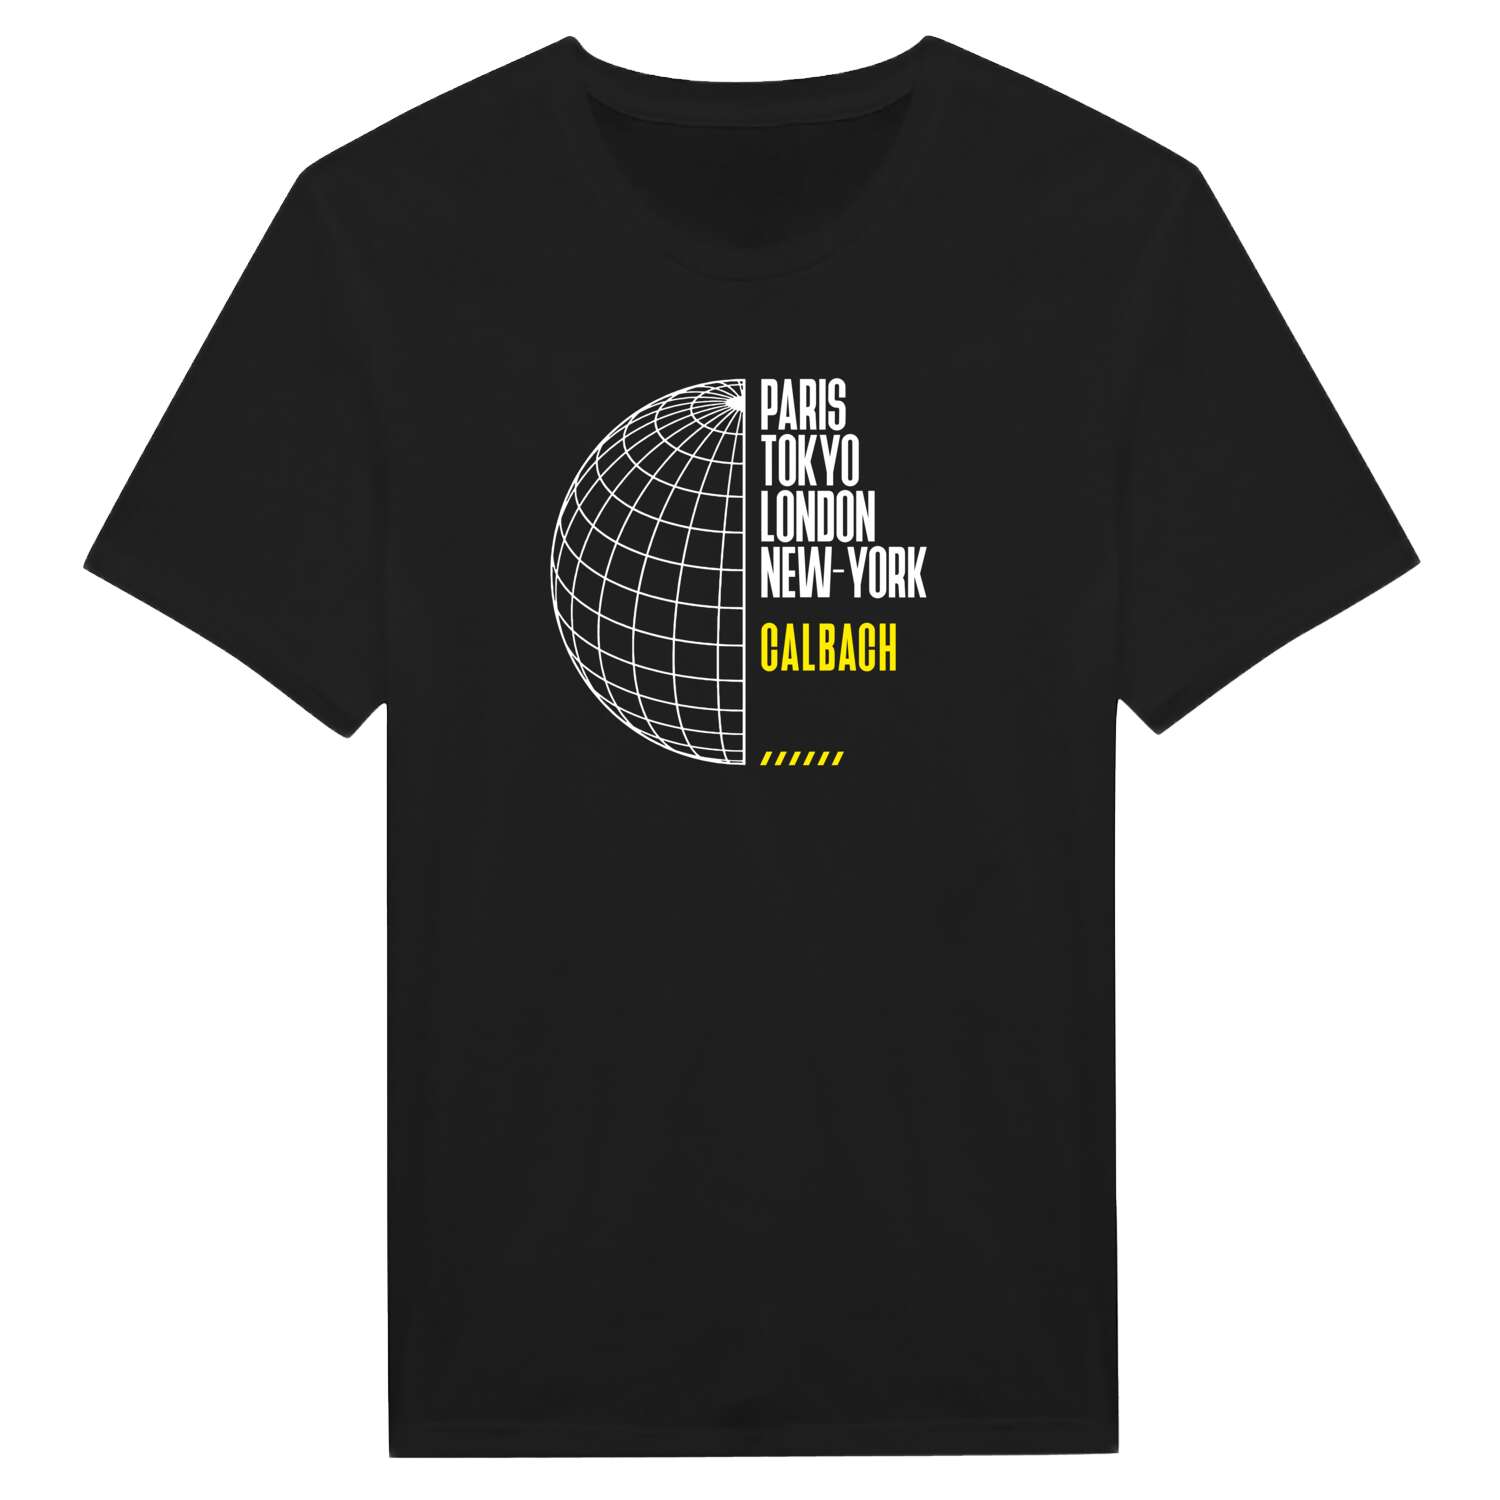 Calbach T-Shirt »Paris Tokyo London«